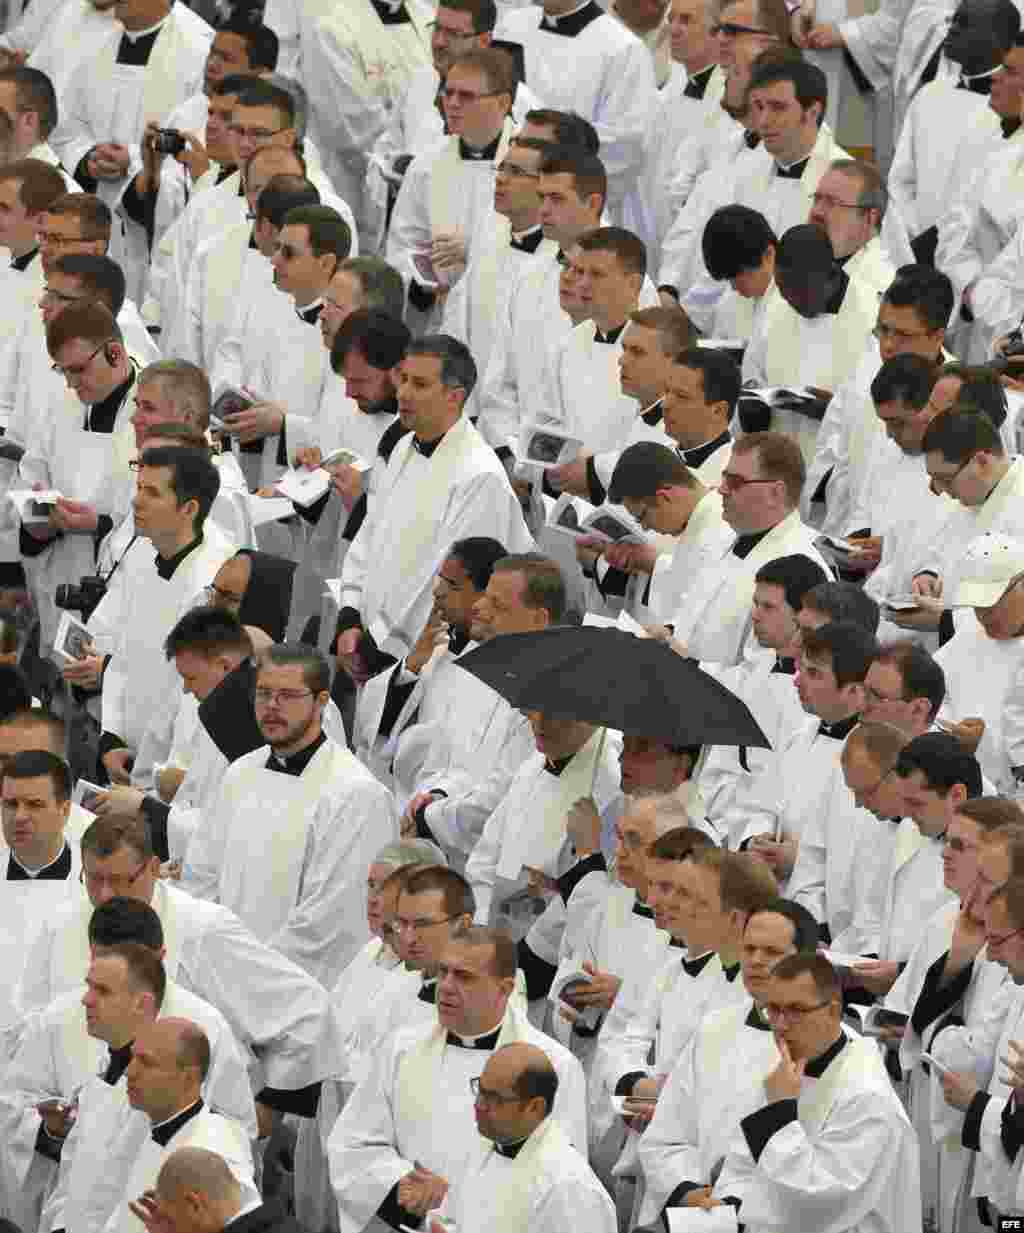 Un grupo de religiosos, durante la ceremonia de canonización que se celebra hoy en la Plaza de San Pedro de los dos papas más venerados del siglo XX, Juan Pablo II y Juan XXIII, al que asisten un millón de fieles, cerca de 150 cardenales, delegaciones de 